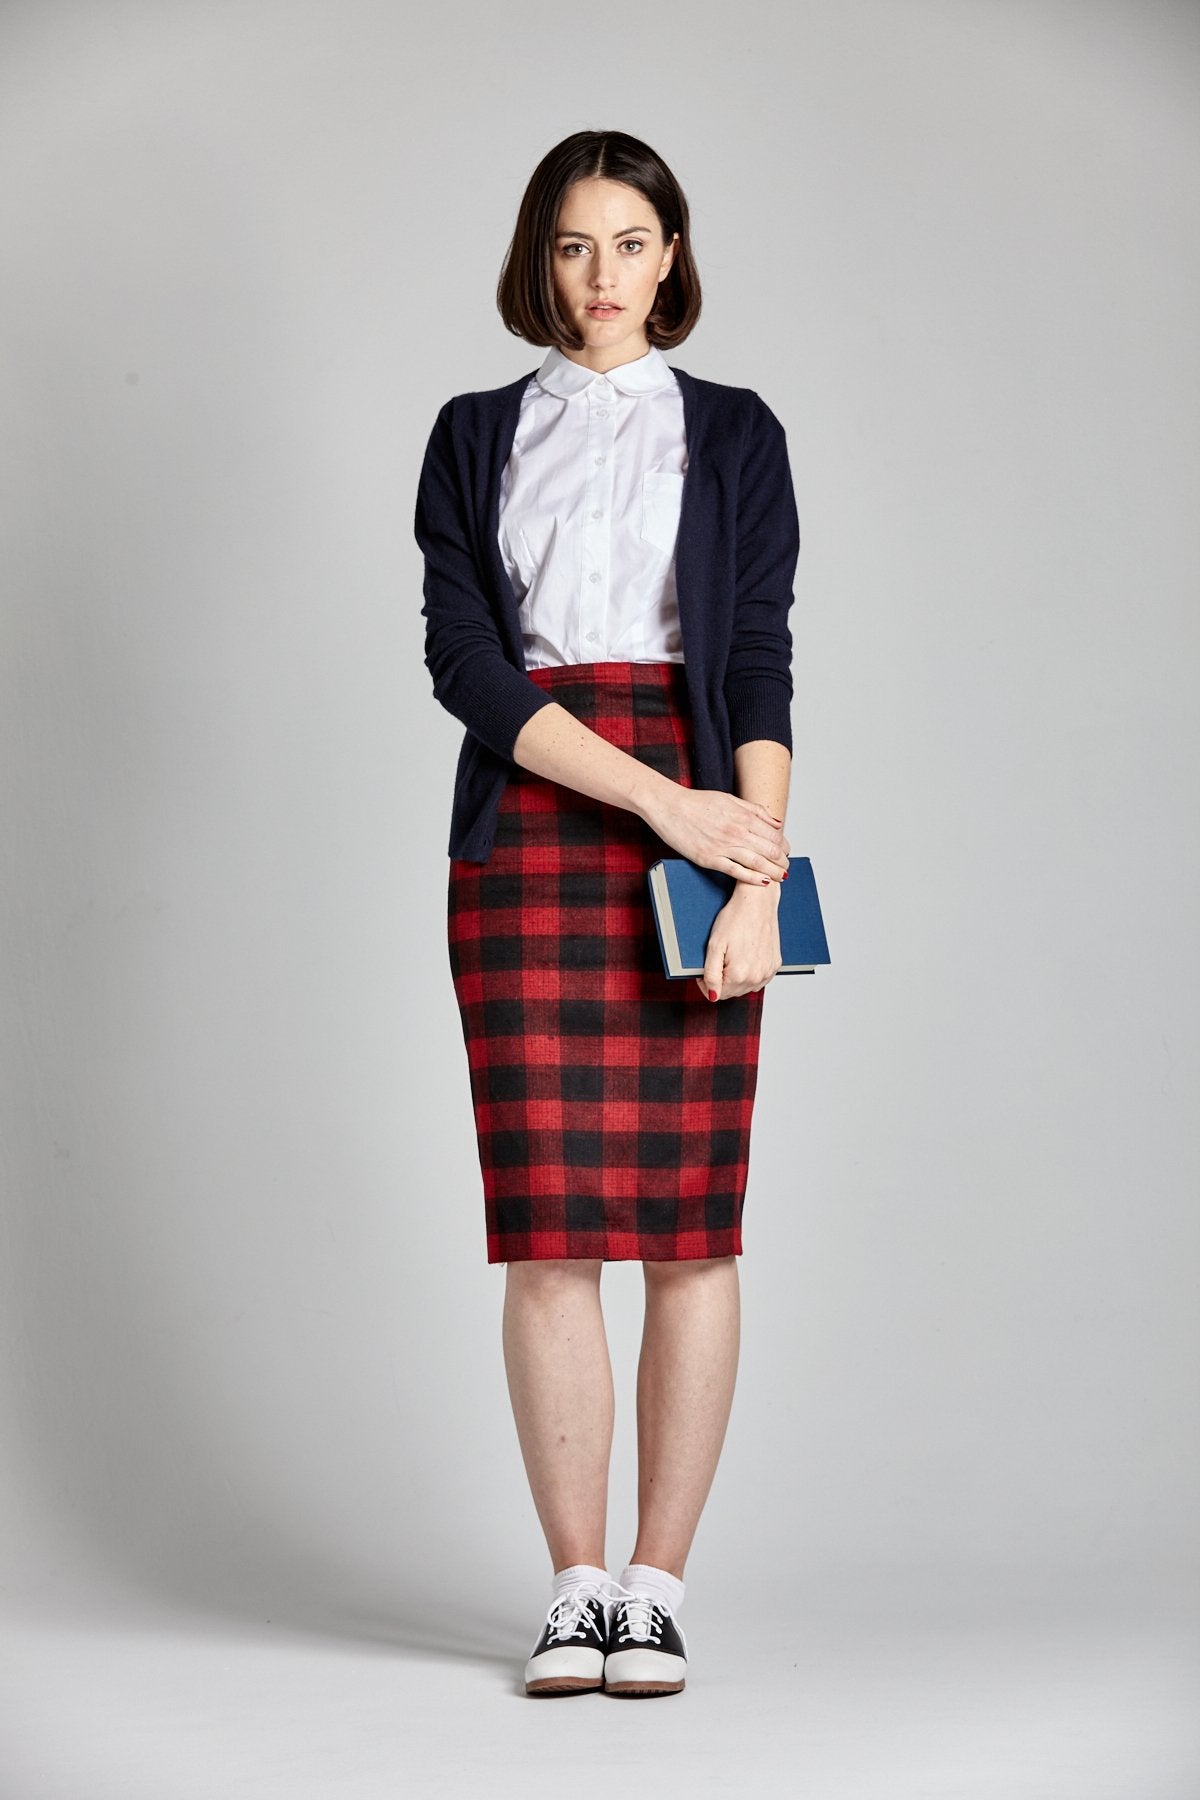 Audrey Horne Pencil Skirt